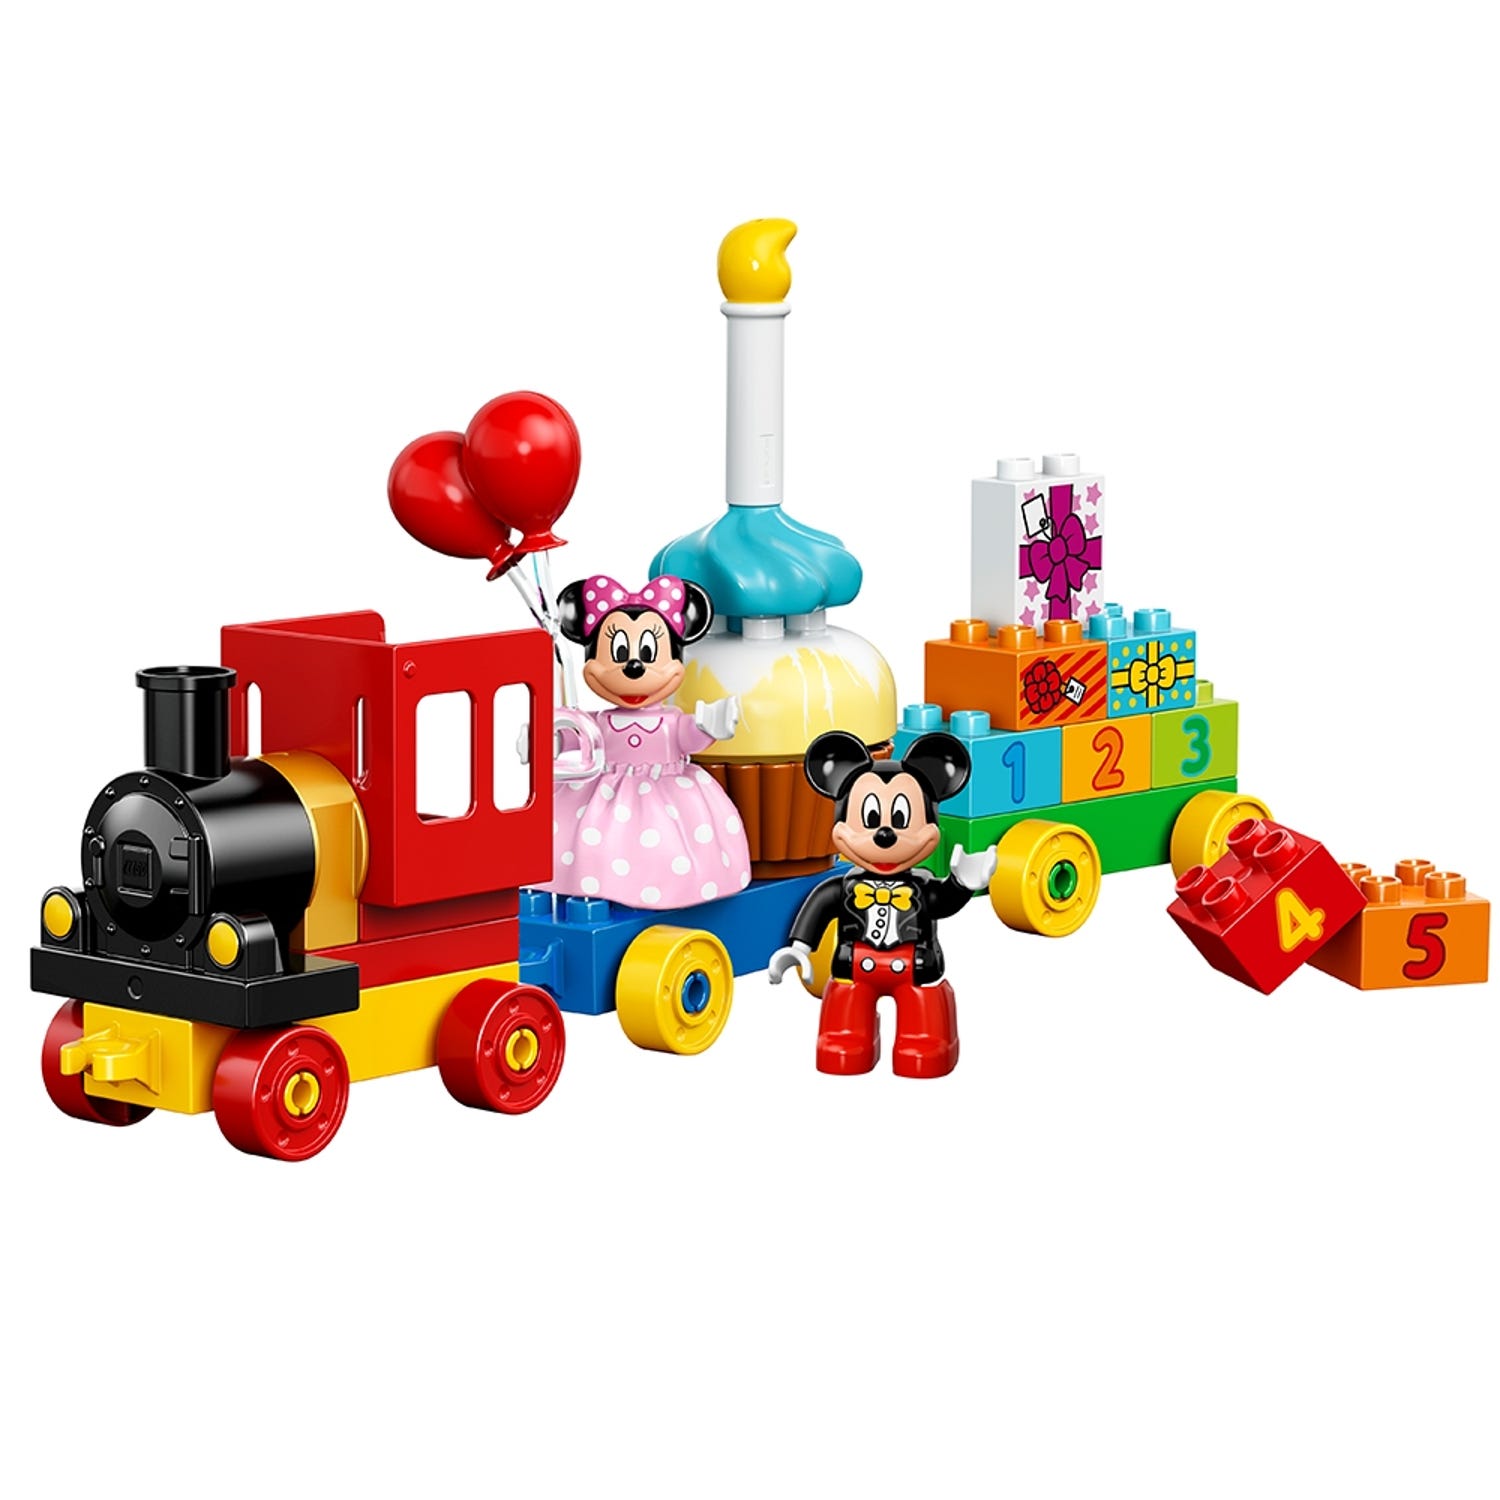 La Parade D Anniversaire De Mickey Et Minnie Disney Boutique Lego Officielle Fr